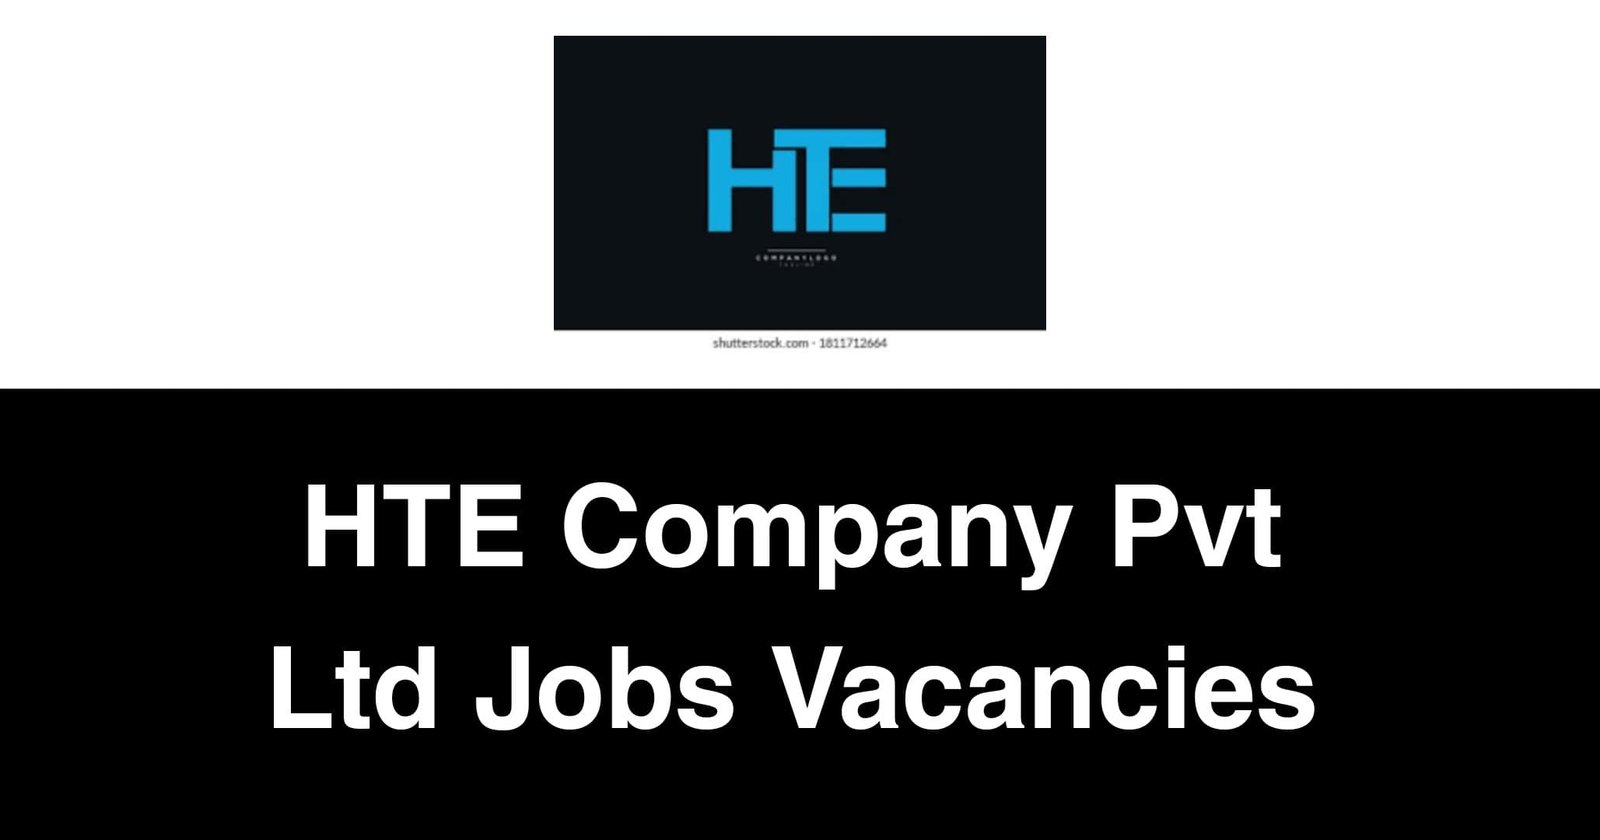 HTE Company Pvt Ltd Jobs Vacancies